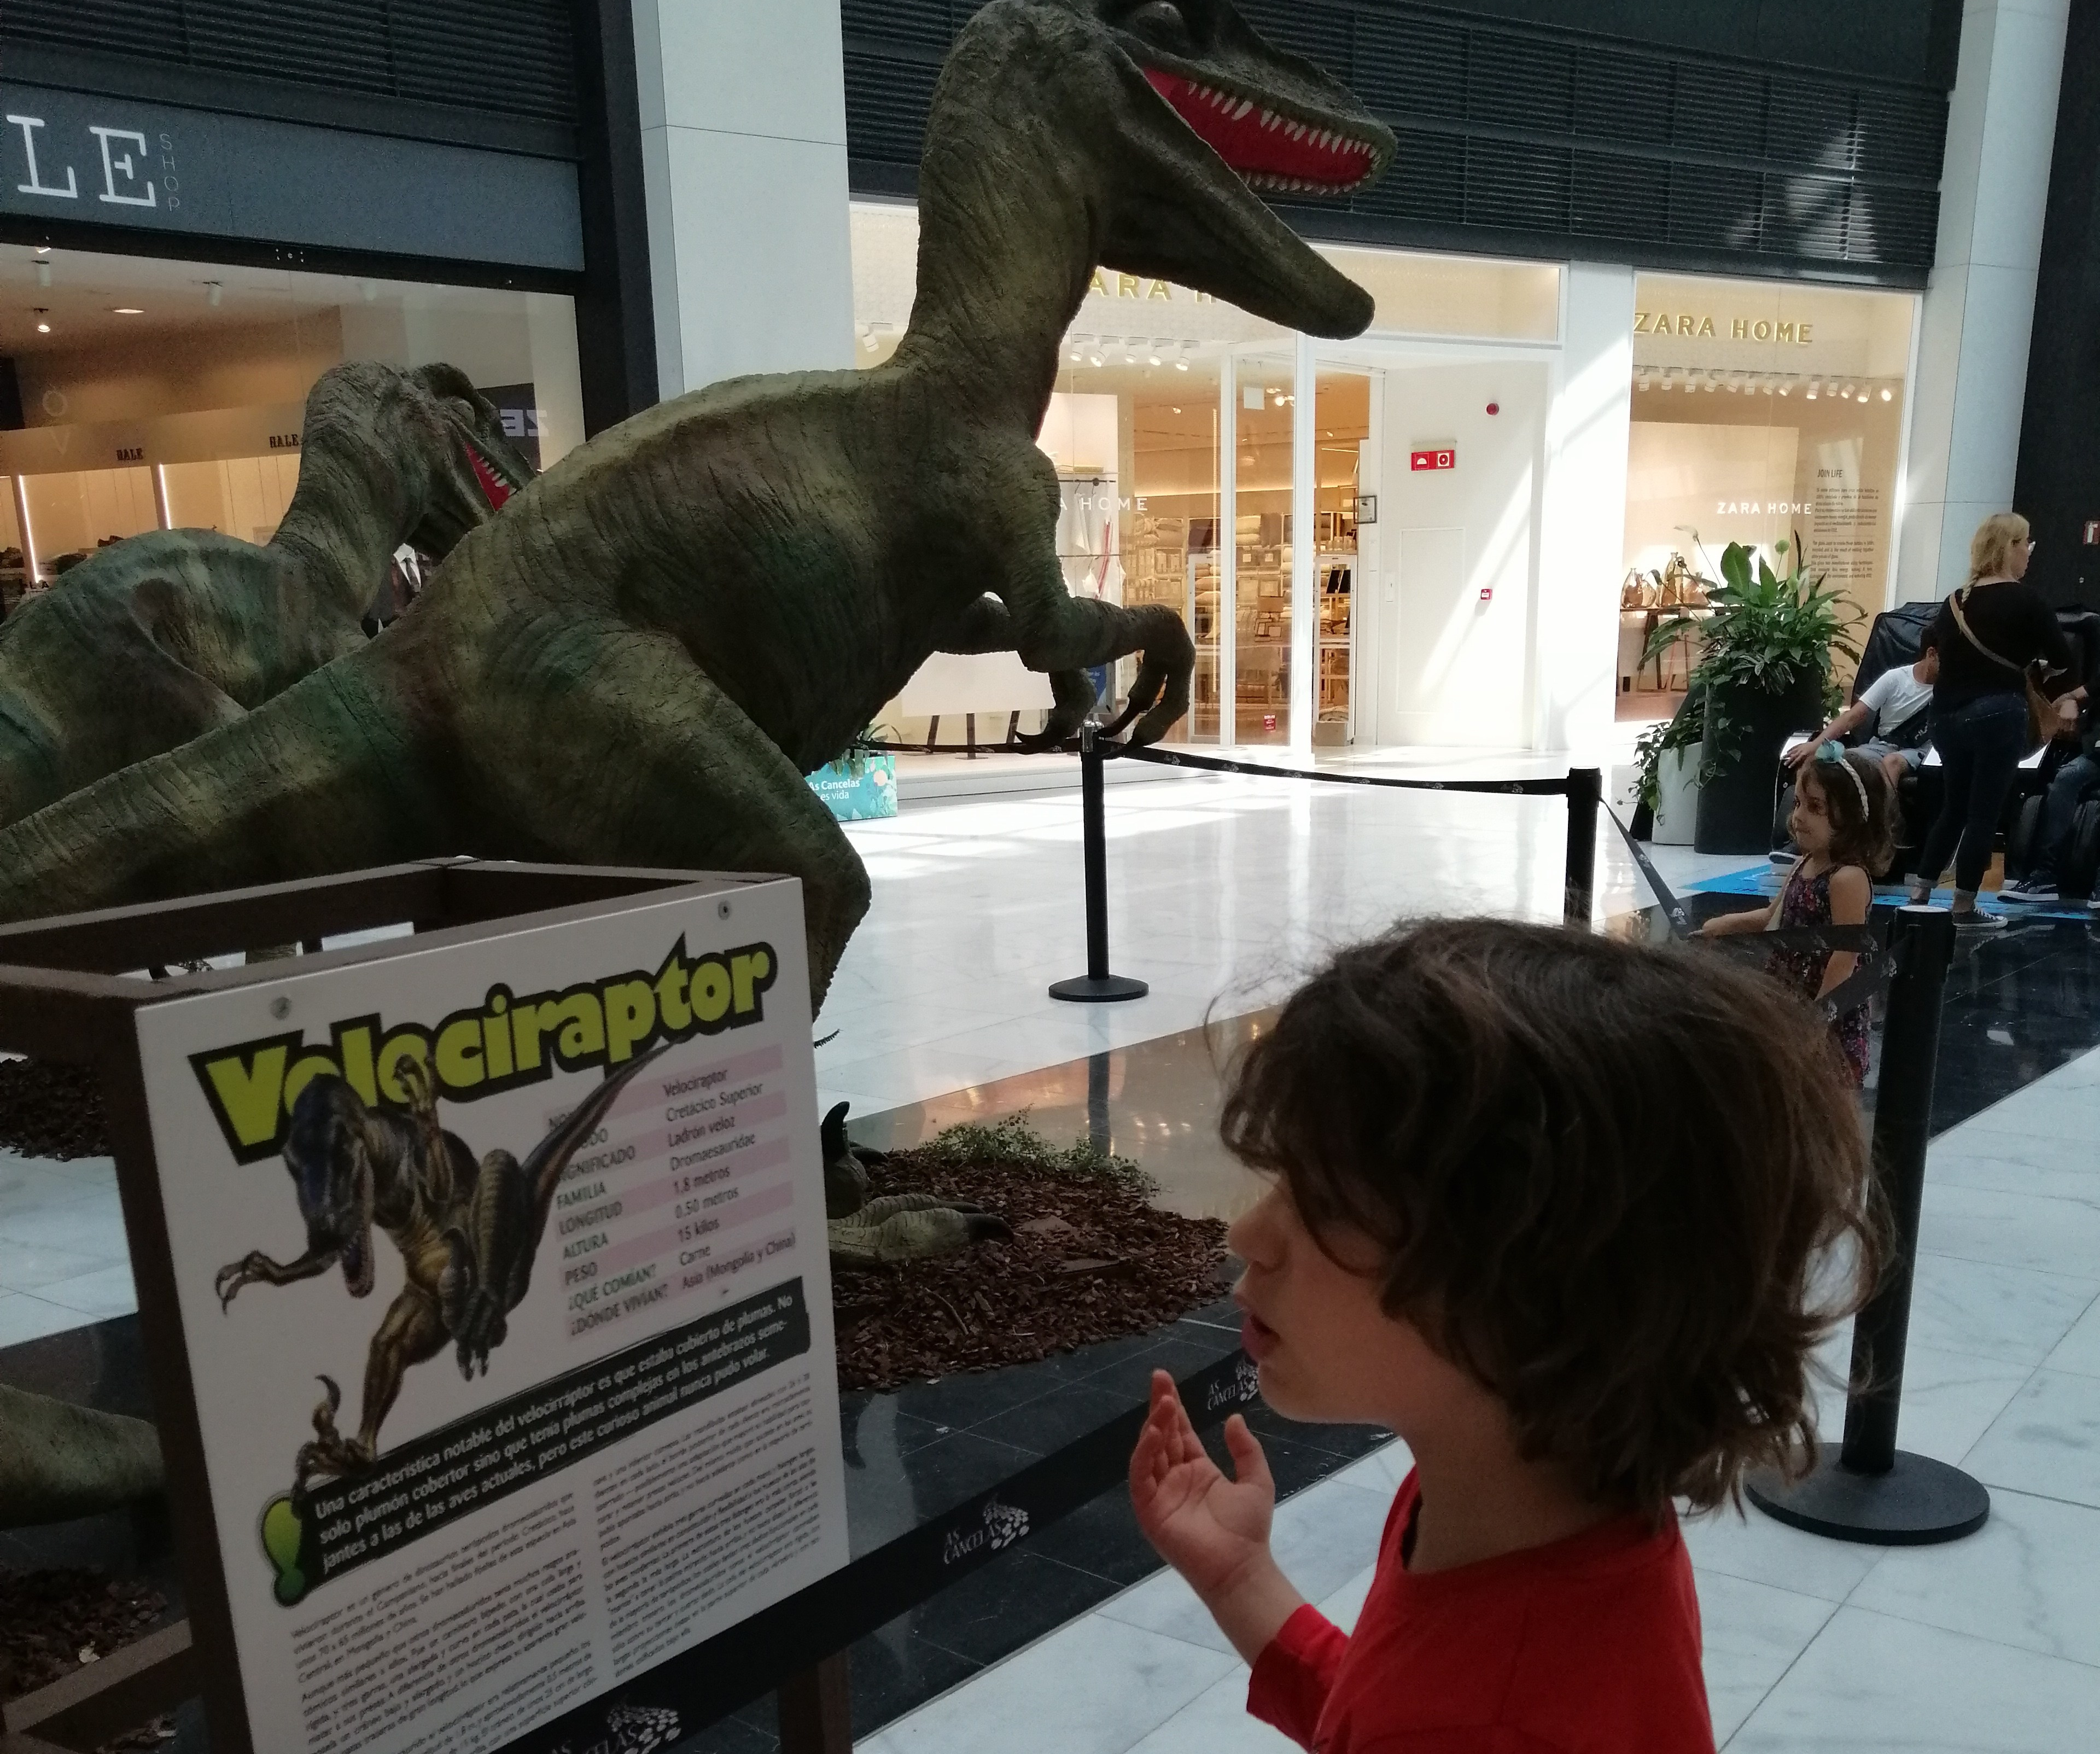 Exposición sobre dinosaurios